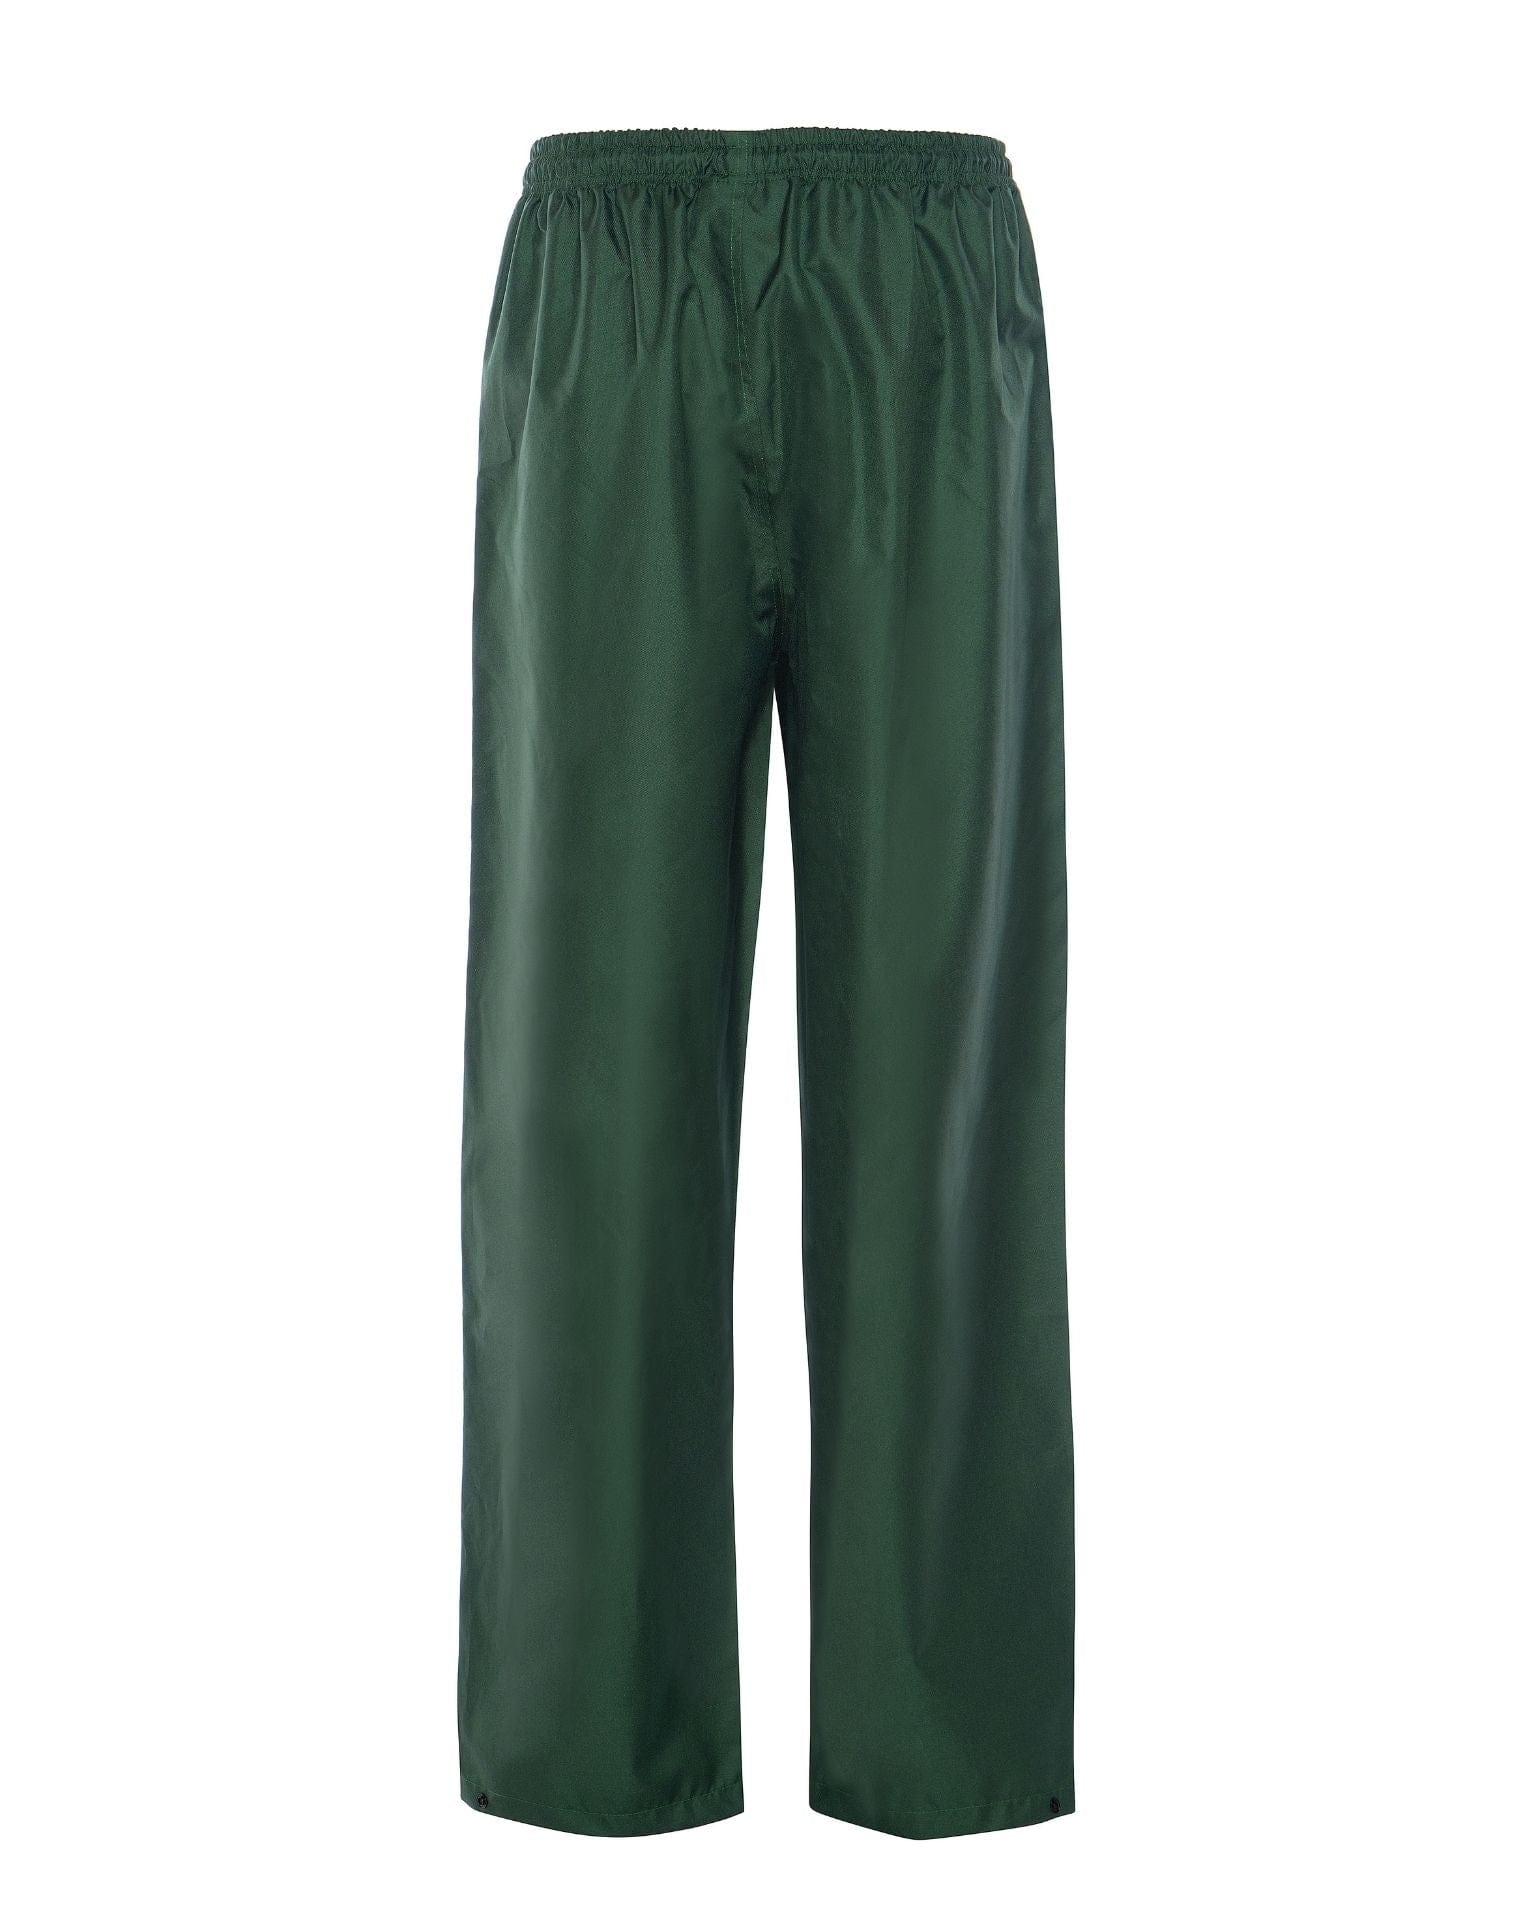 Utility Pro Wear Men's Rainwear UPA893 - Pullup Lightweight Rain Pant - Green